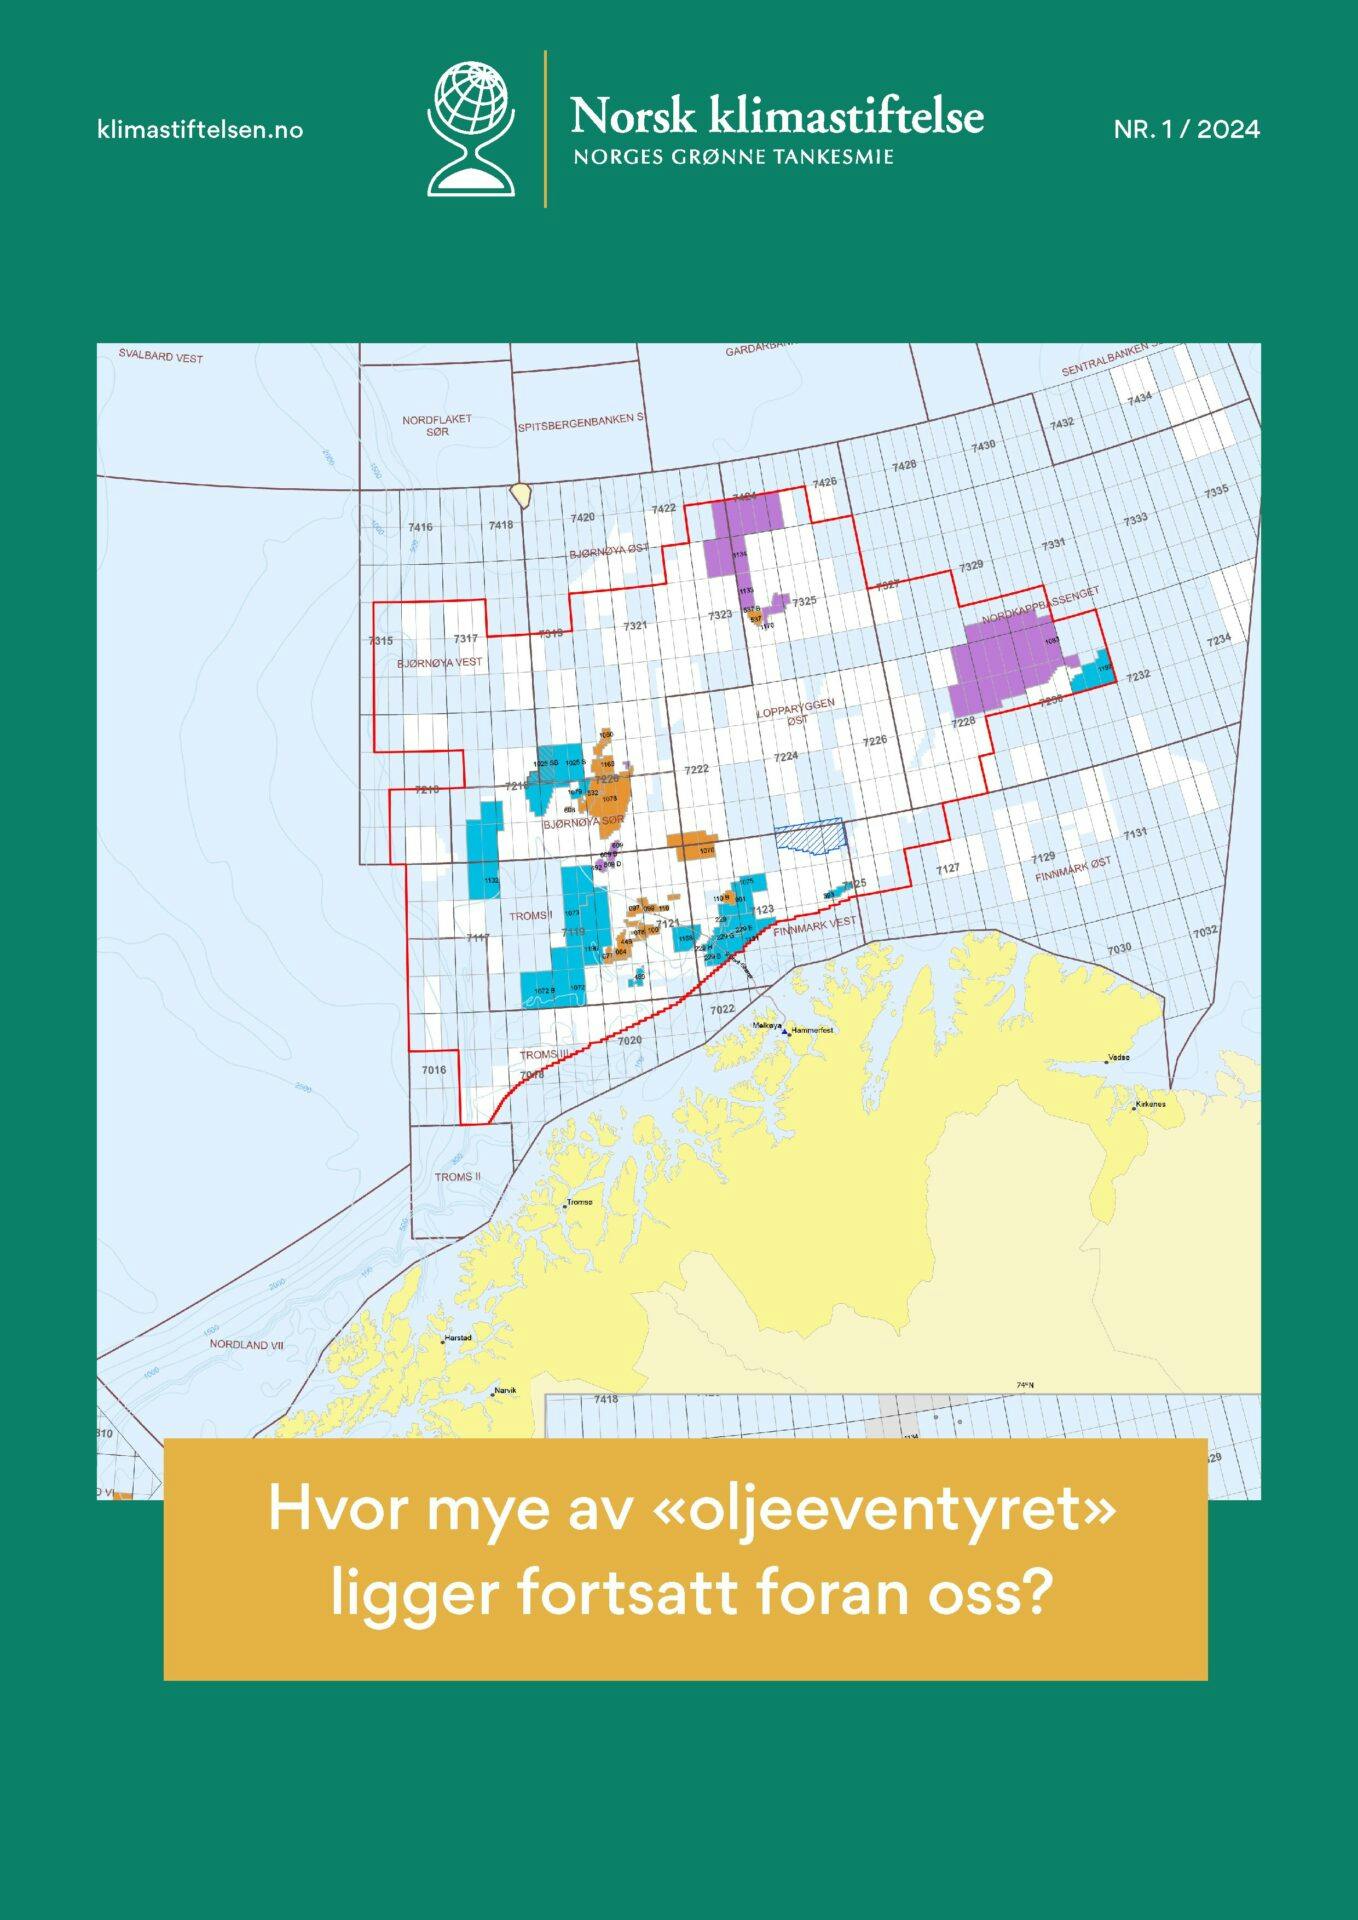 Et kart med ulike fargede områder er dekket av tekst i en gul boks som leser "Hvor mye av 'oljeeventyret' ligger fortsatt foran oss?" Øverst på bildet vises logoen og navnet til Norsk klimastiftelse.